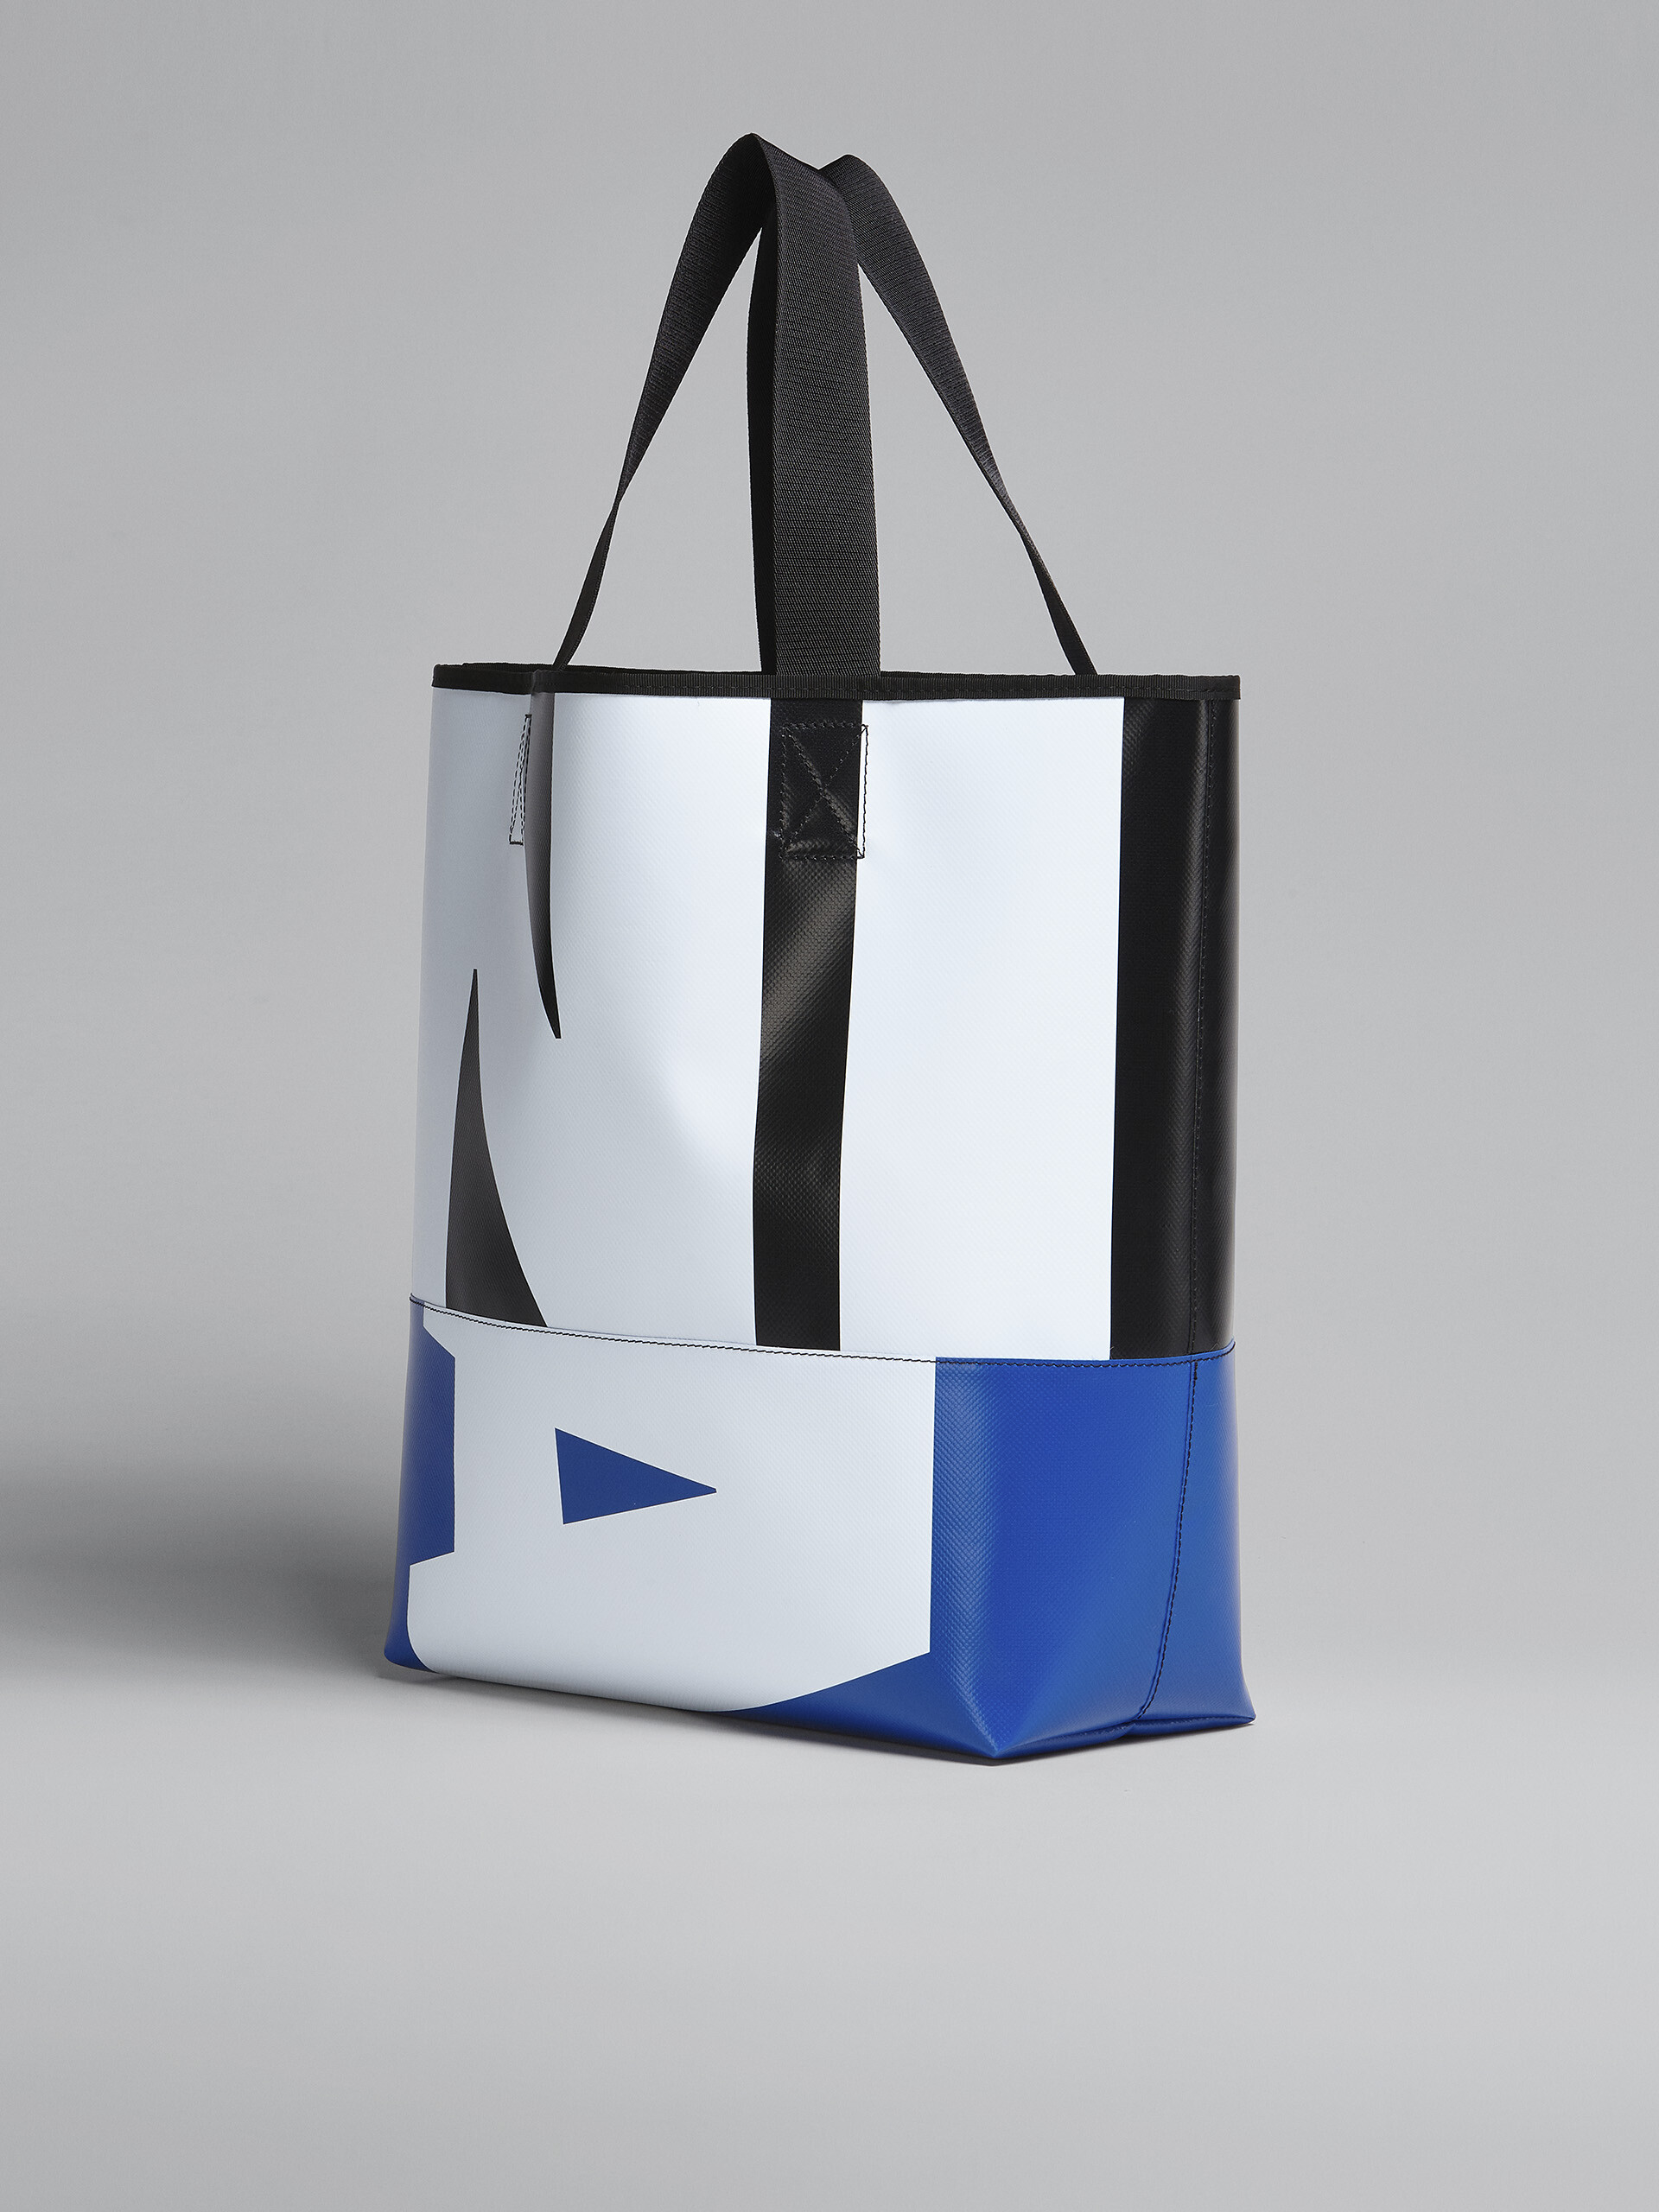 TRIBECA ロゴショッピングバッグ | Marni